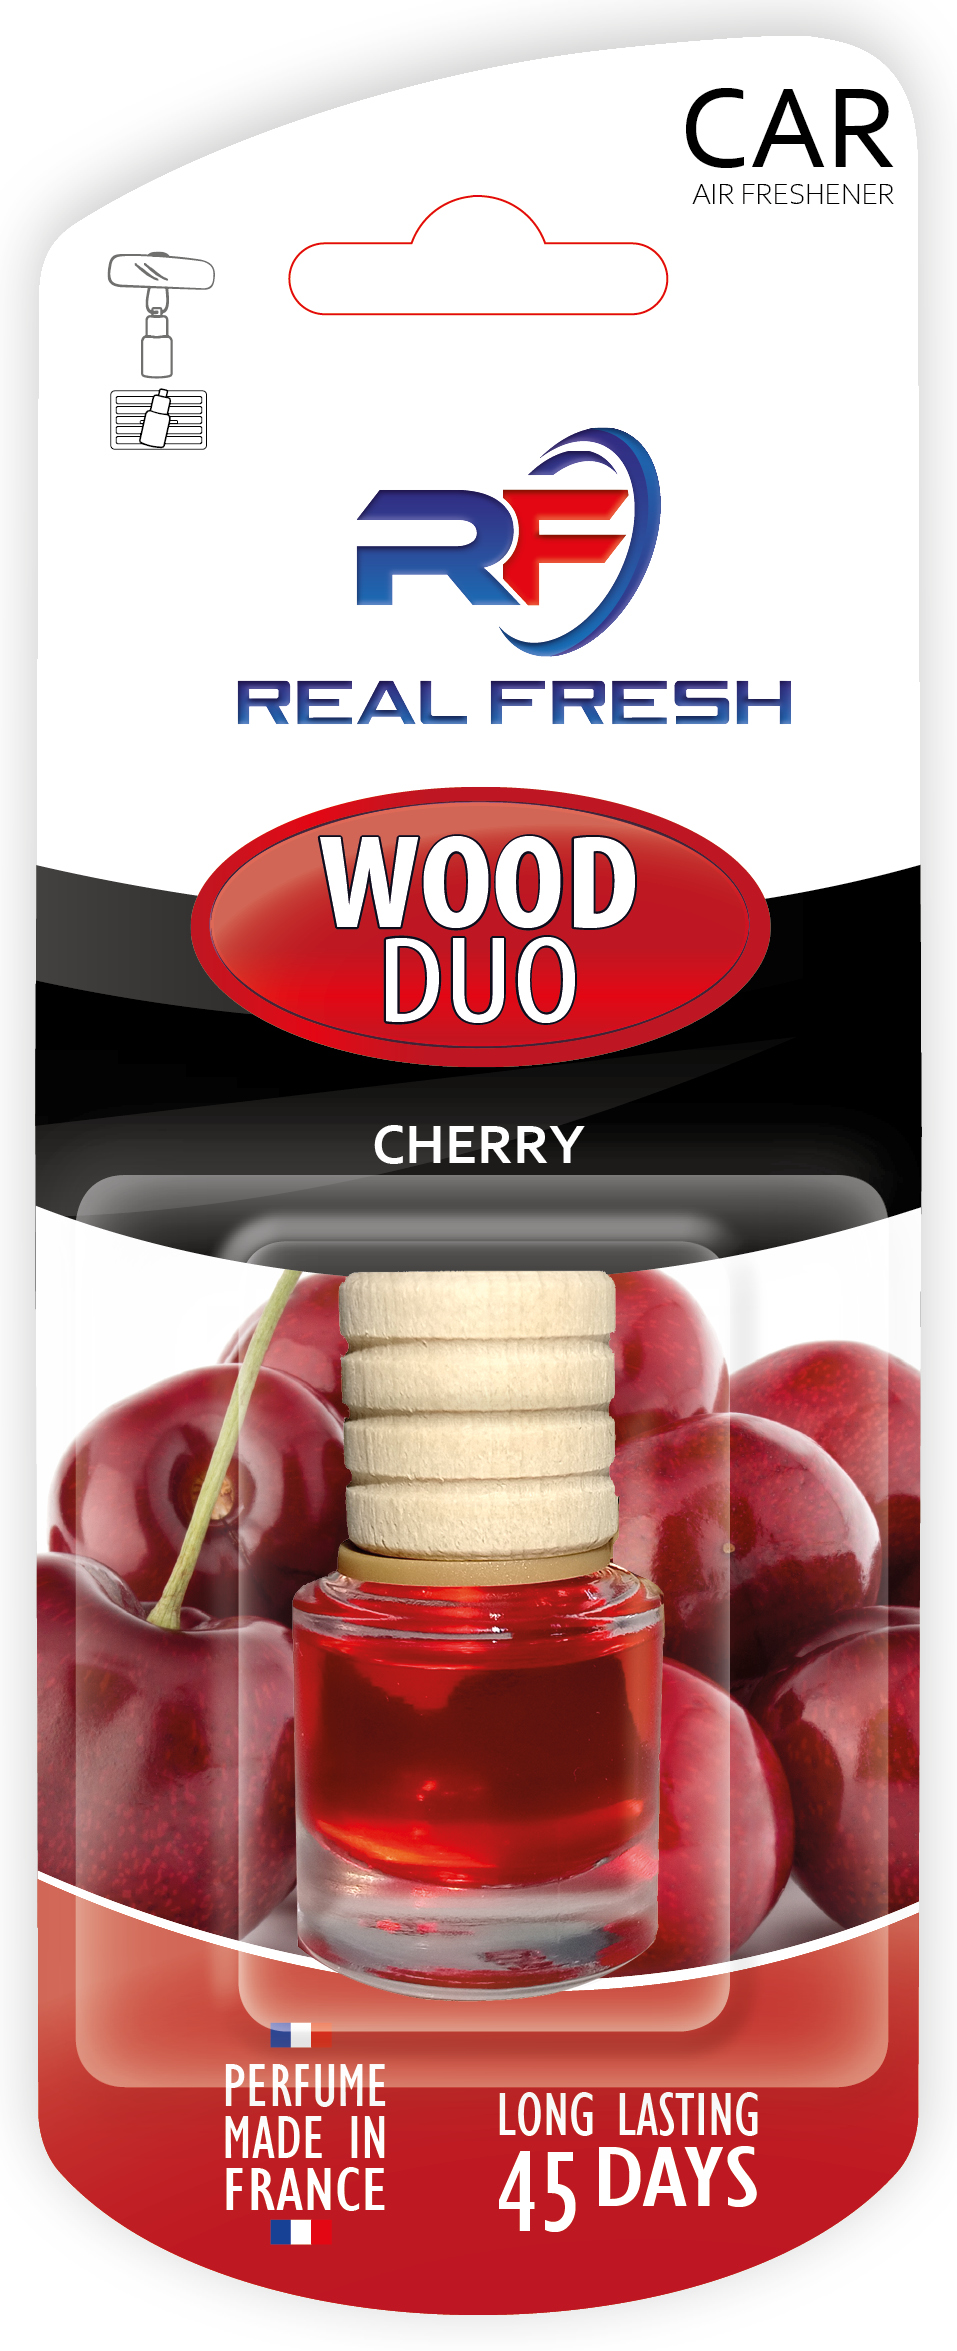 WOOD DUO Cherry Image